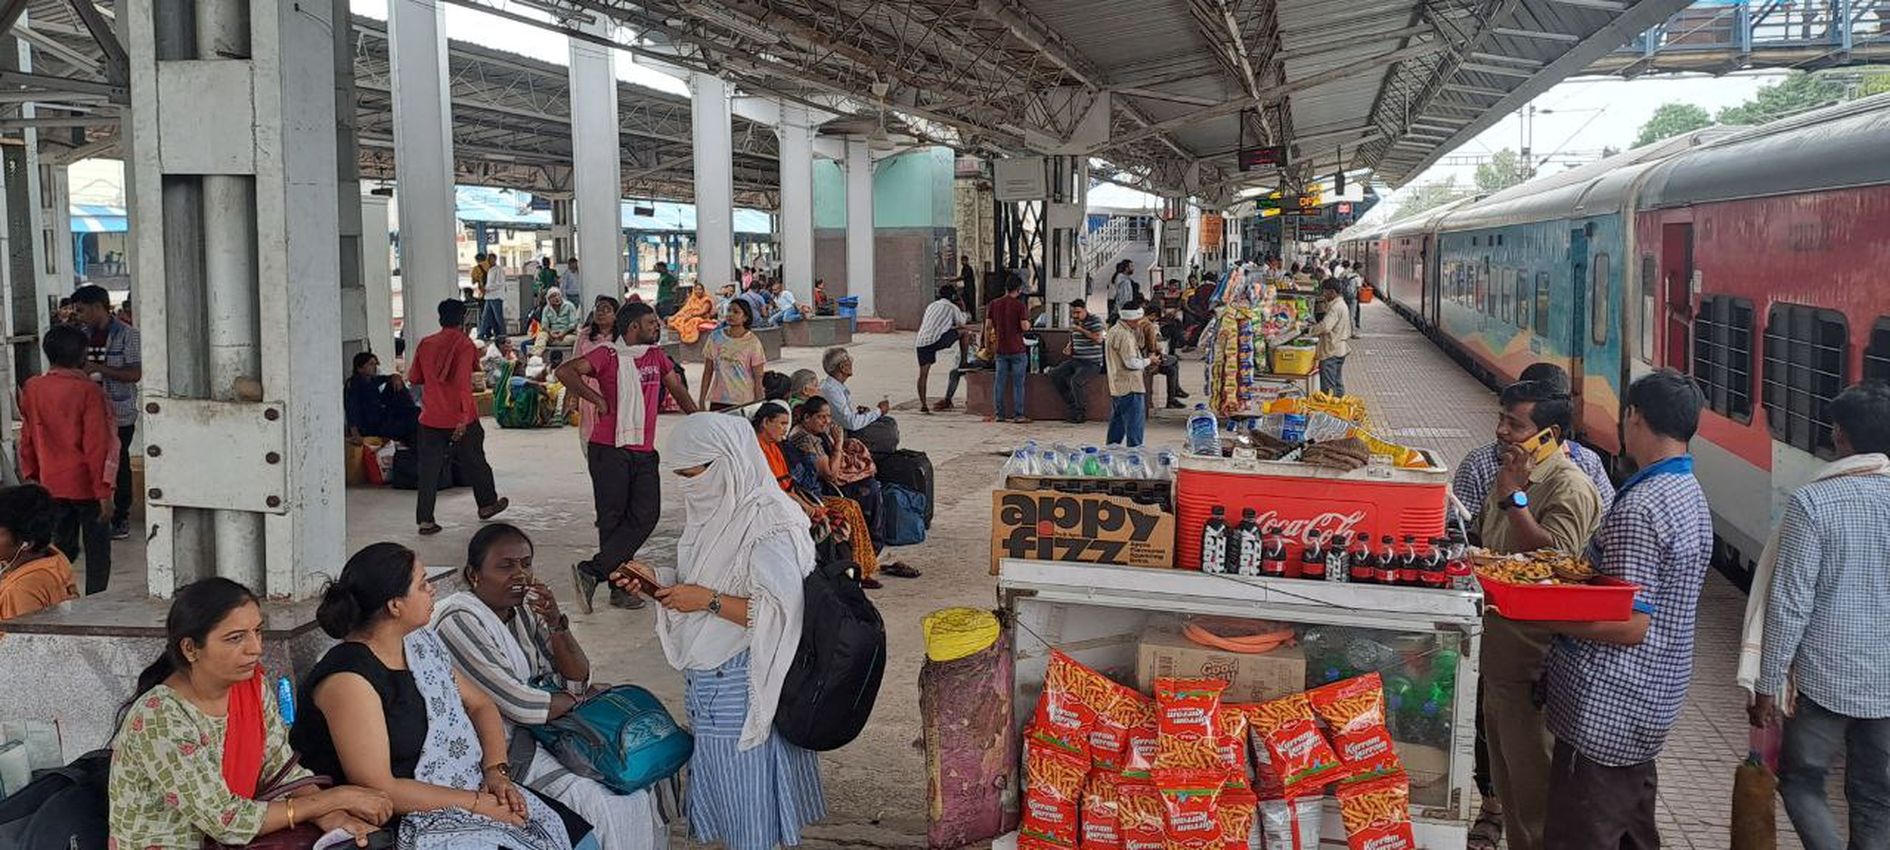 Non interlocking block at railway station, a dozen trains affected